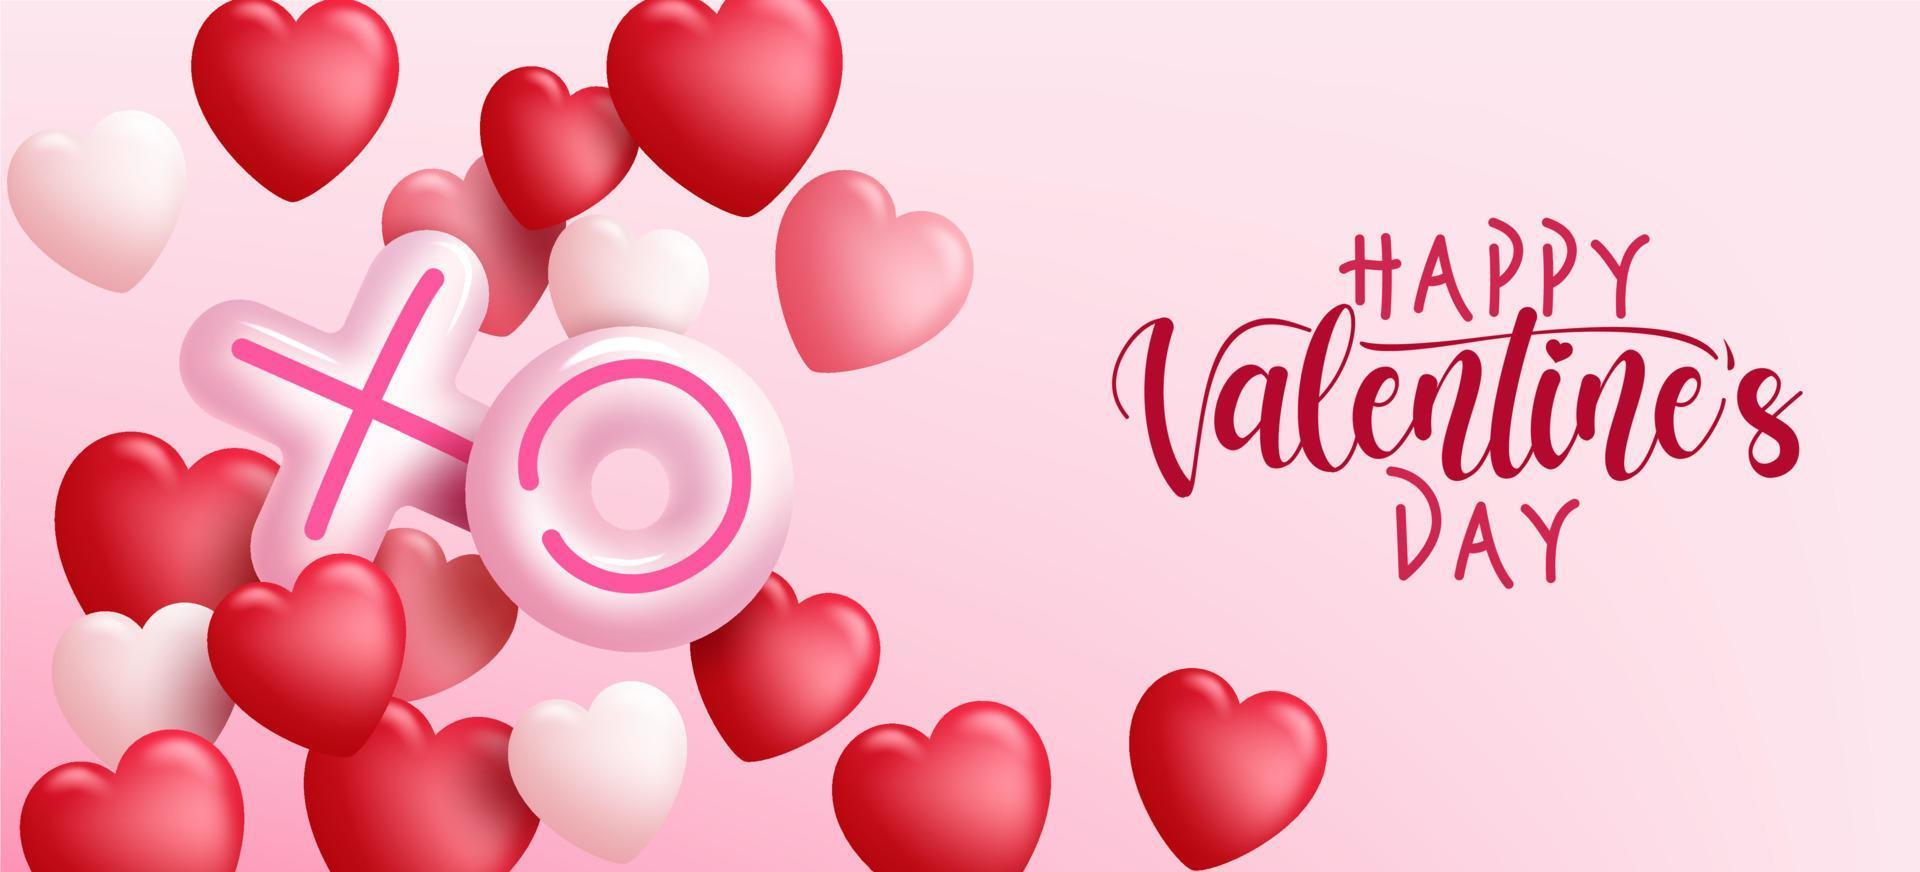 disegno di sfondo vettoriale di San Valentino. buon san valentino testo con palloncini ed elementi decorativi a cuore fluttuanti su sfondo rosa per messaggi di auguri romantici. illustrazione vettoriale.